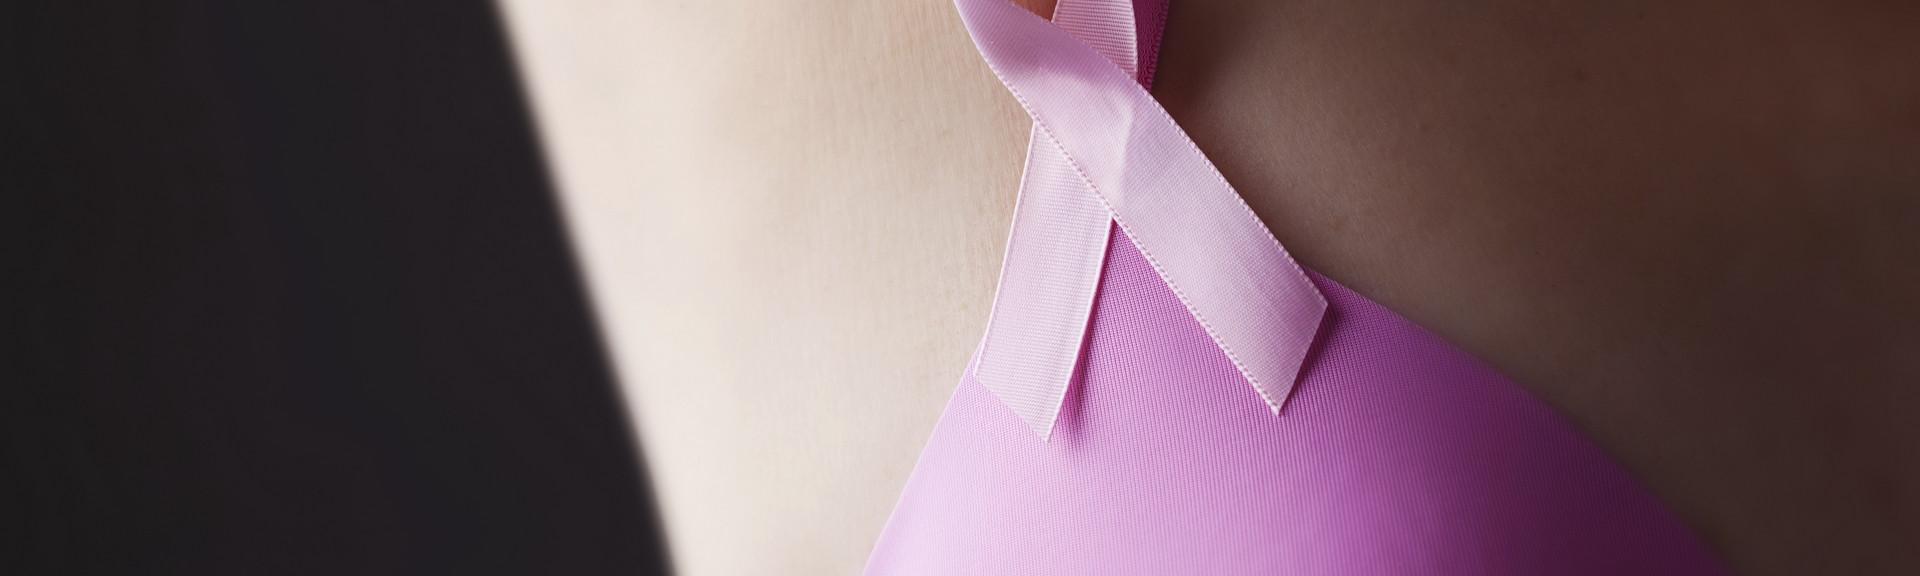 dépistage du cancer du sein